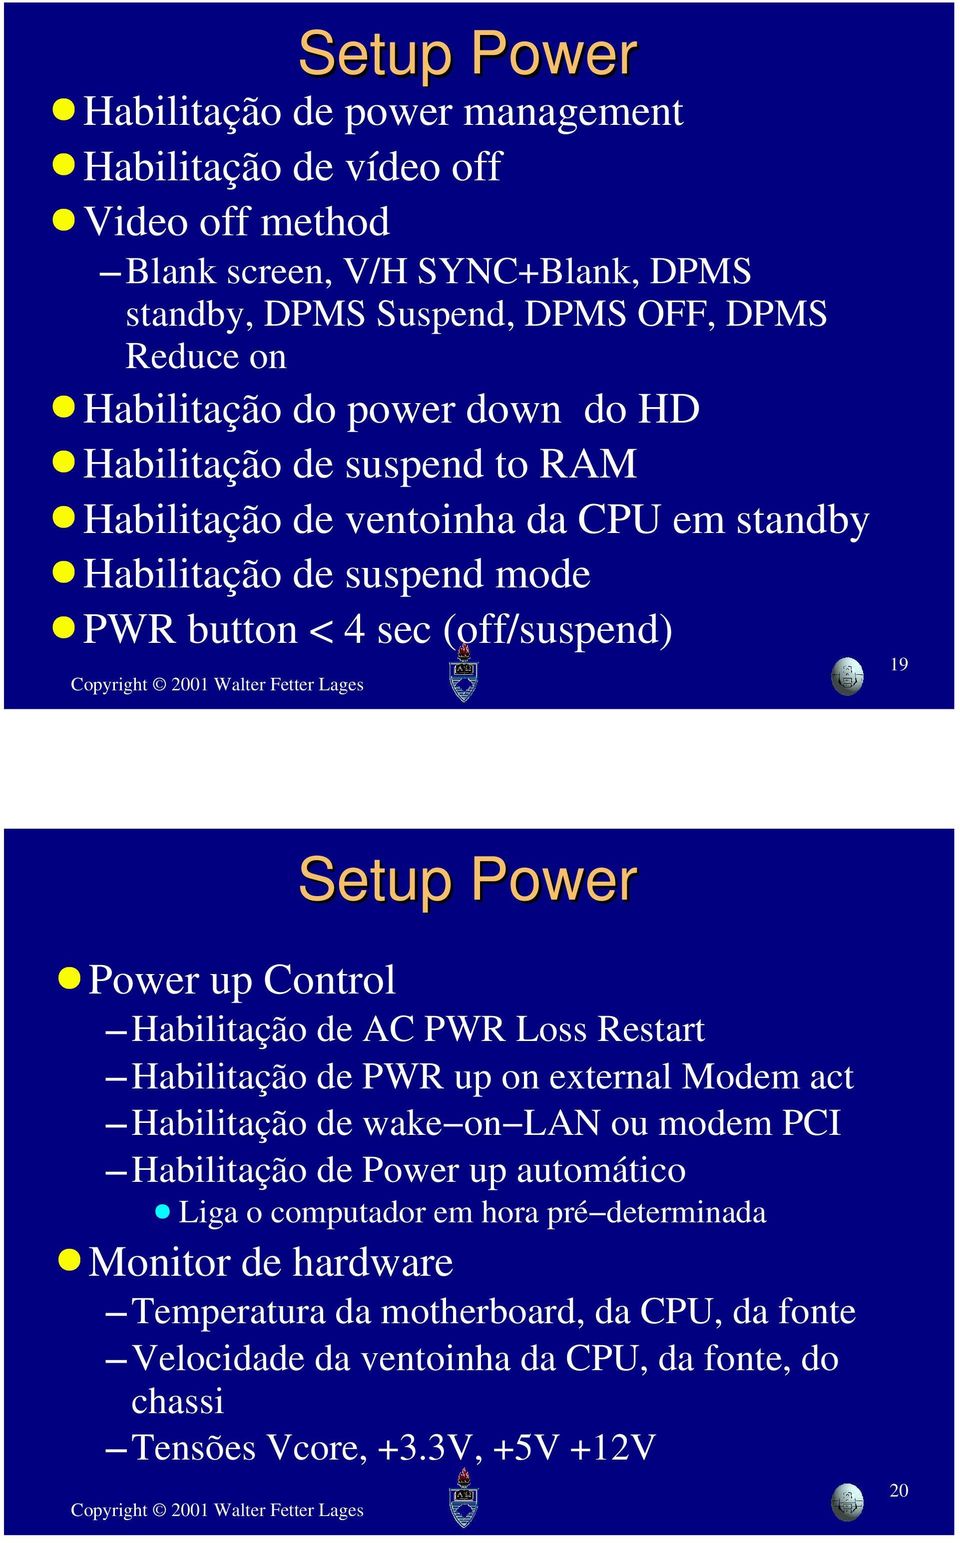 Power Power up Control Habilitação de AC PWR Loss Restart Habilitação de PWR up on external Modem act Habilitação de wake on LAN ou modem PCI Habilitação de Power up automático